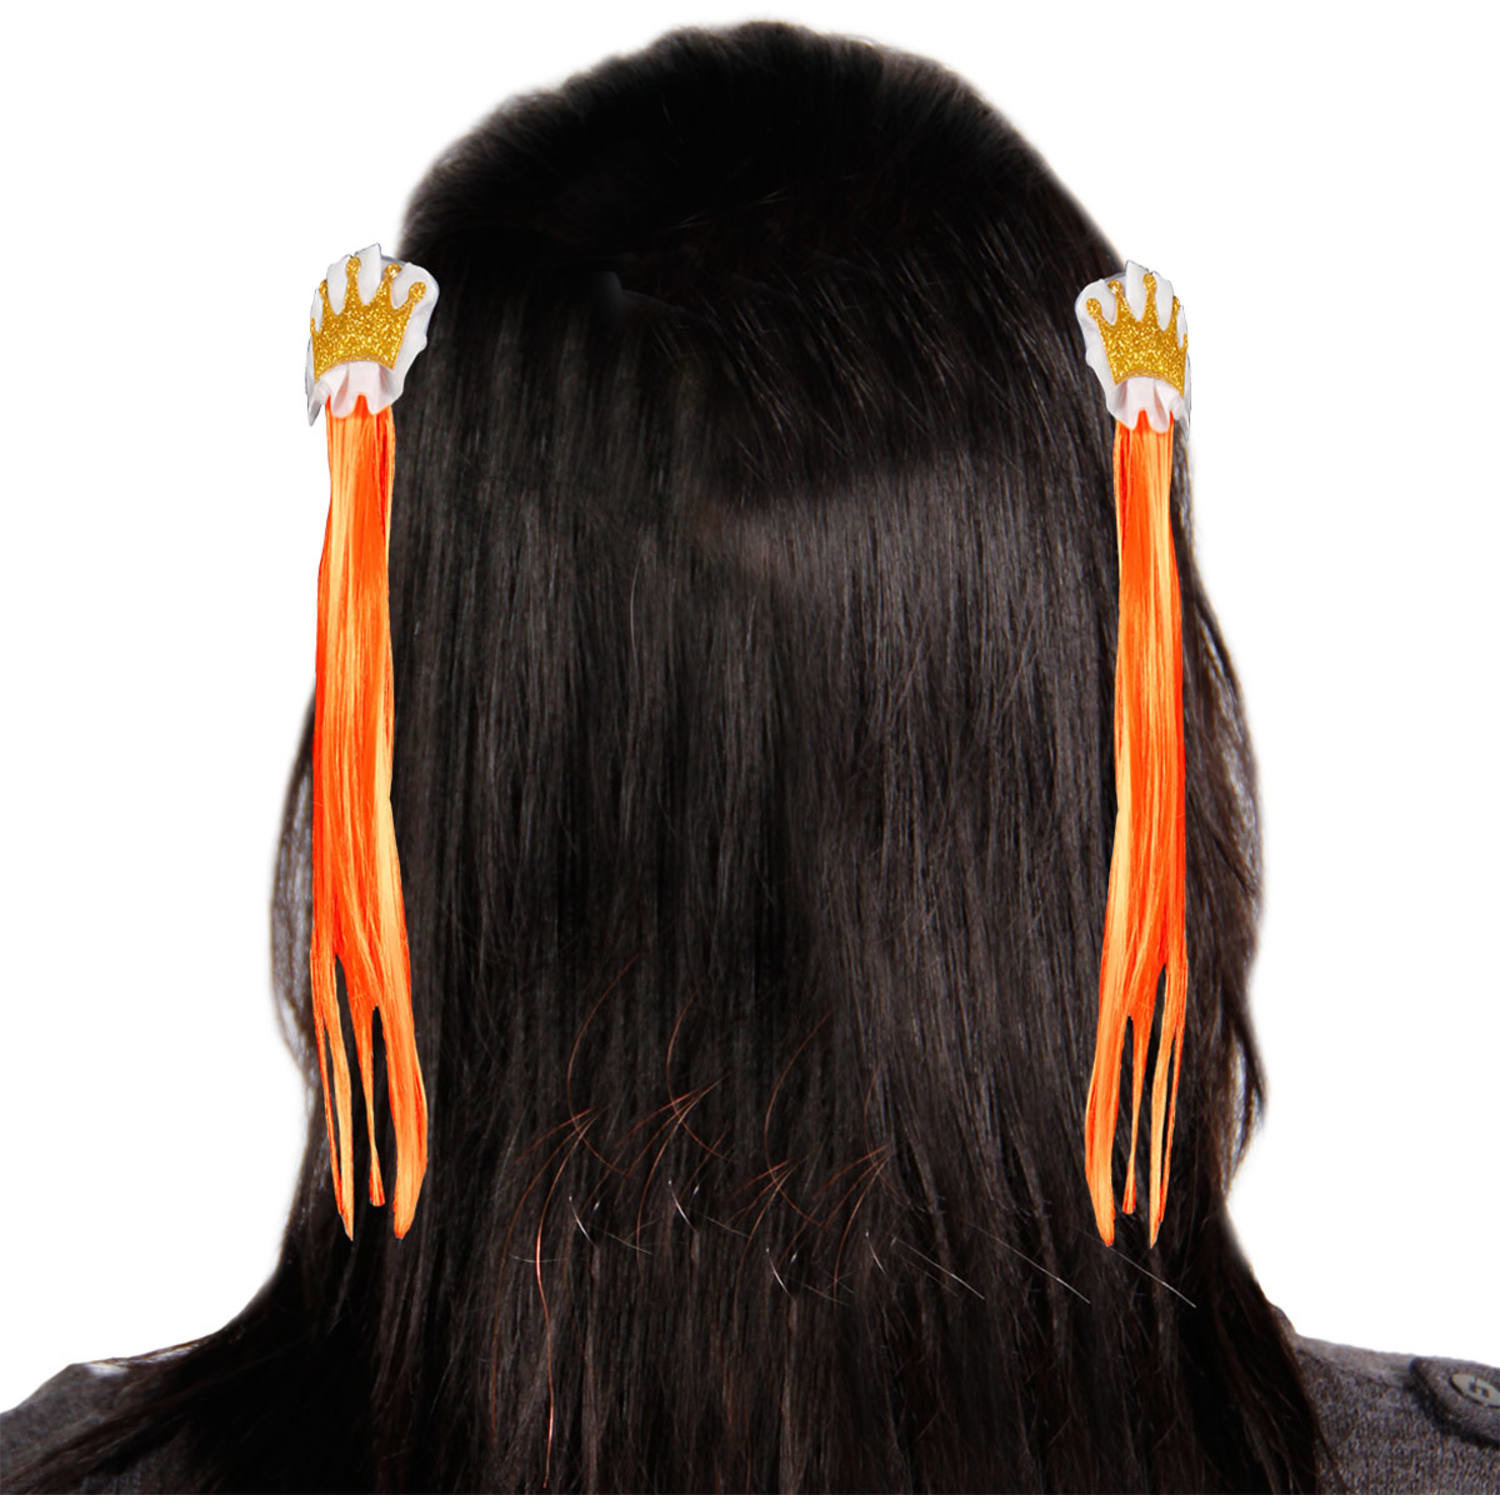 Oranje haarclipjes met oranje haar